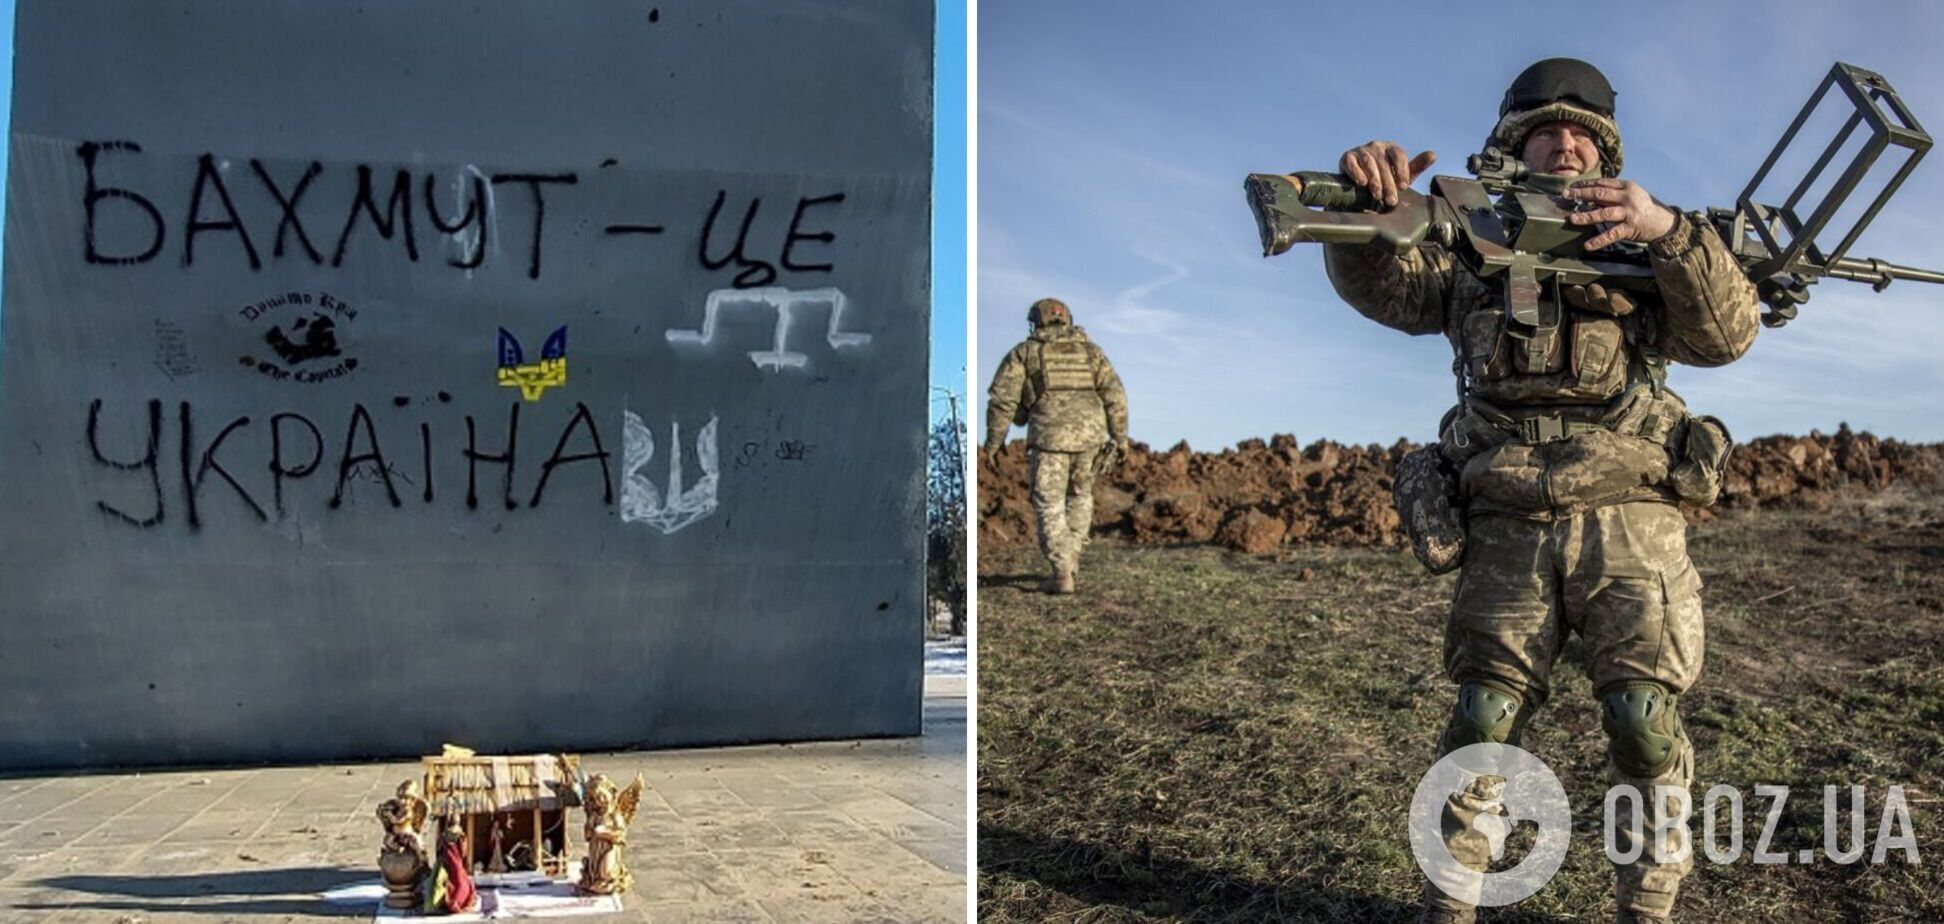 'Это позволяет занять господствующие высоты': в ВСУ рассказали о продвижении украинских войск под Бахмутом. Карта